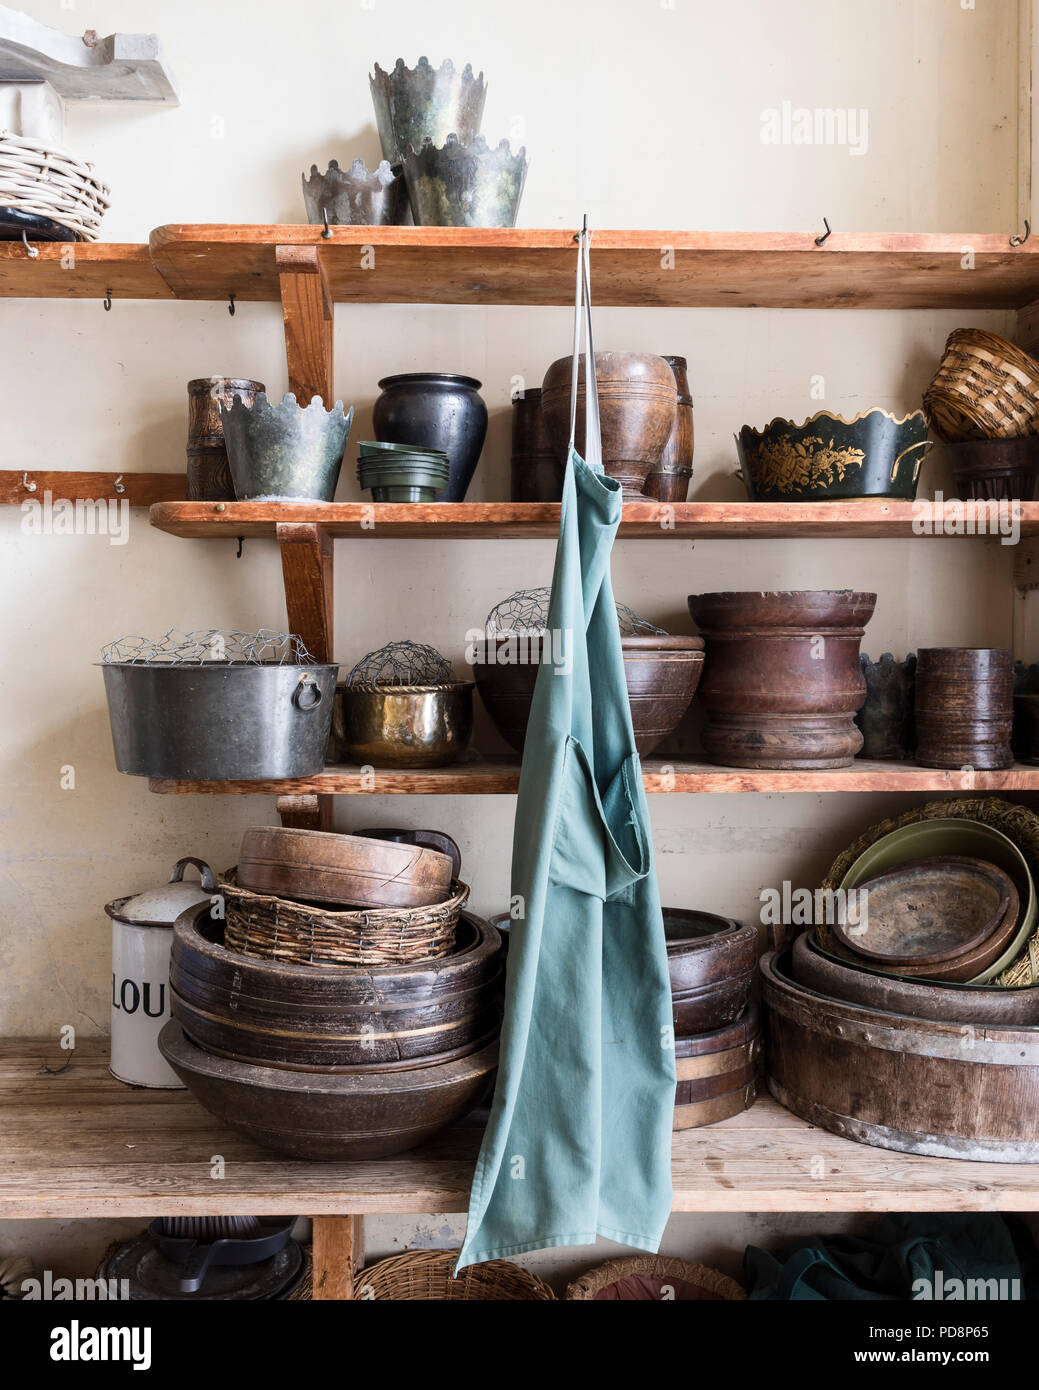 Sammlung von eathenware Gartenarbeit Töpfe auf hölzernen Regalen Stockfoto